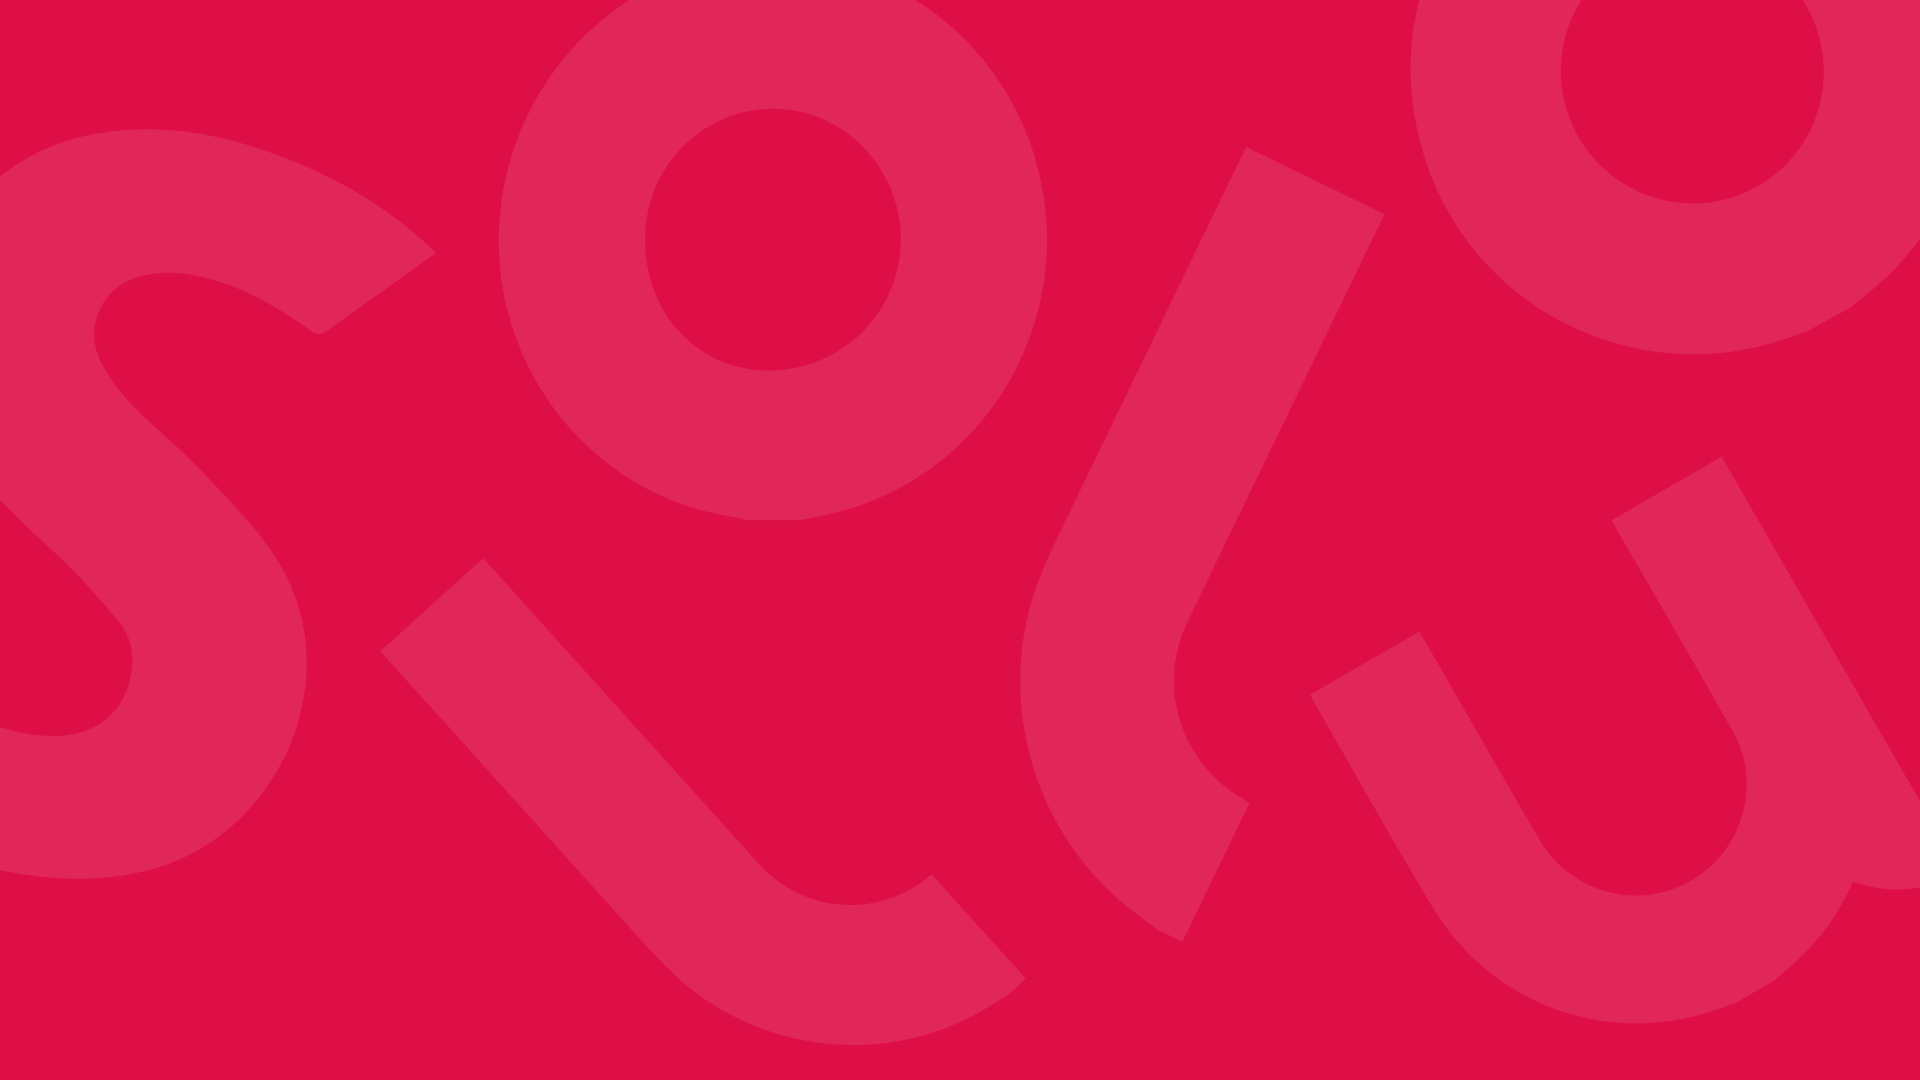 Fond rouge avec les lettres du logo Sollua dans le désordre